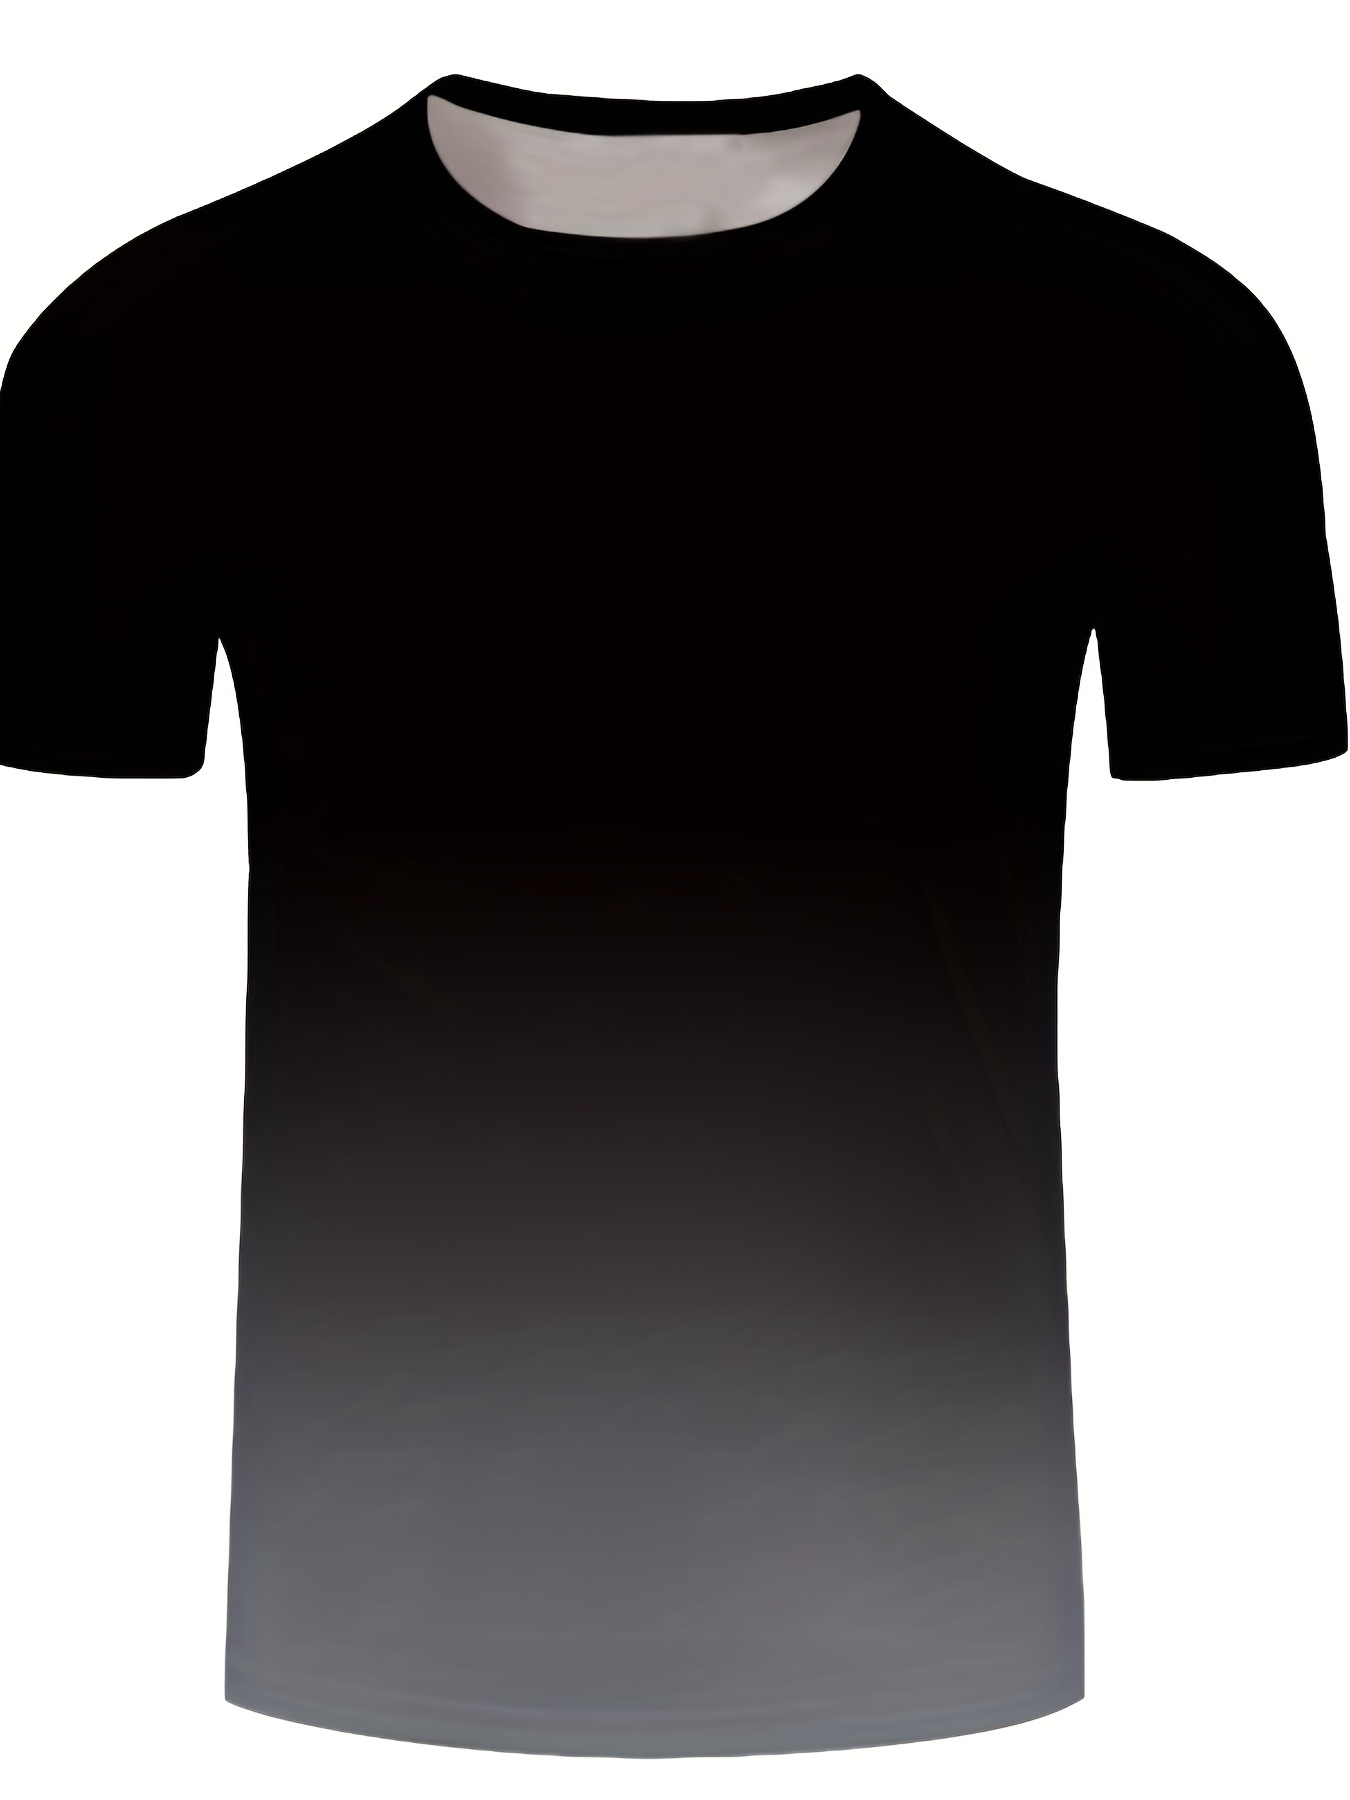 Men's Gradient Active Sports T-shirt